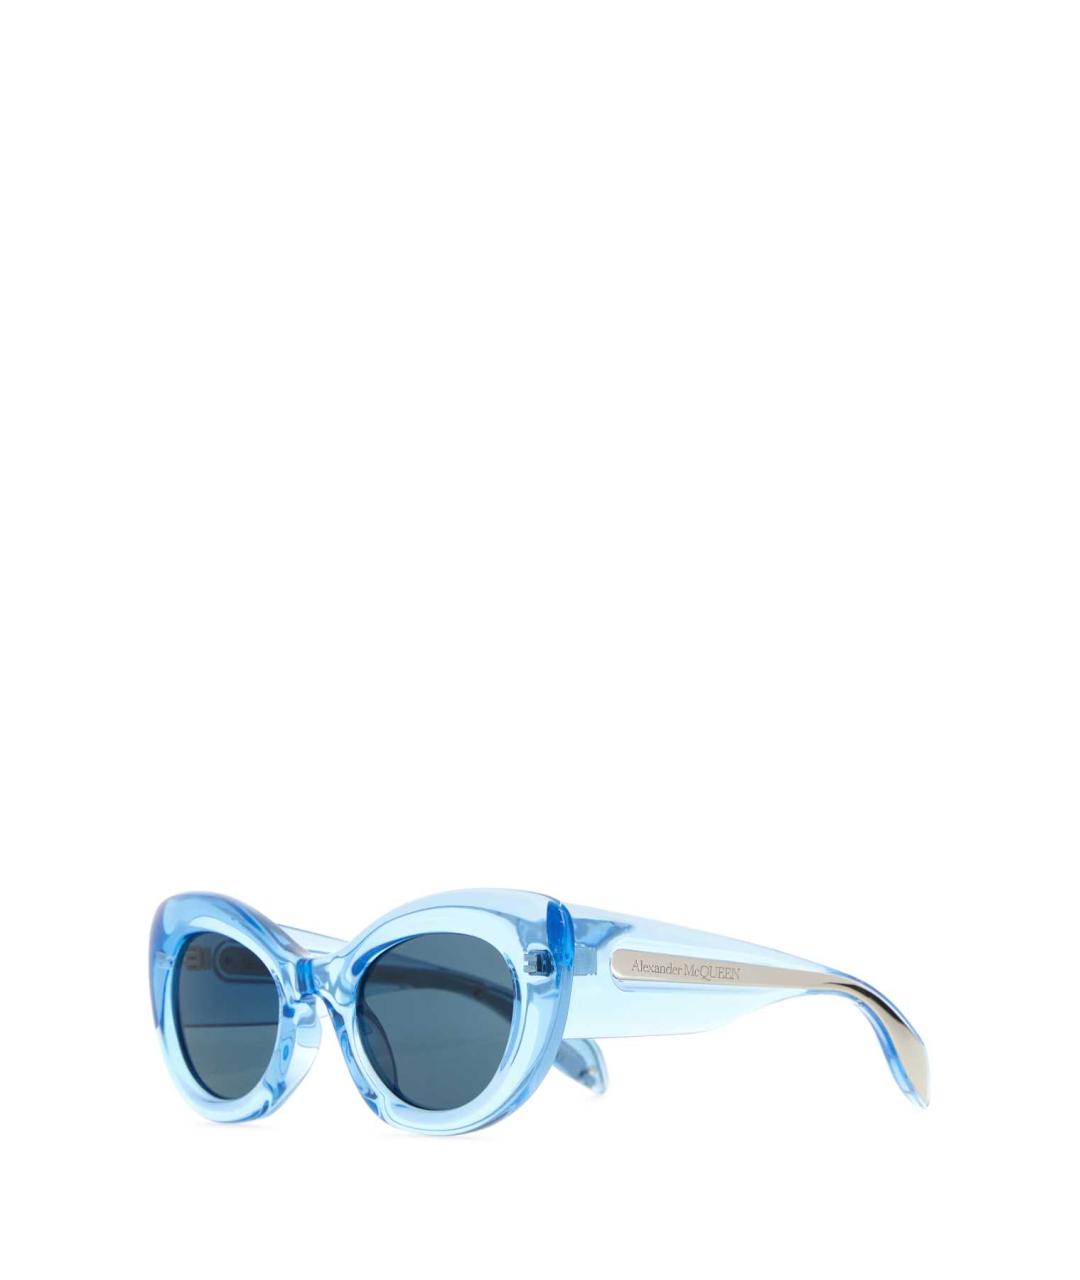 ALEXANDER MCQUEEN Голубые солнцезащитные очки, фото 1